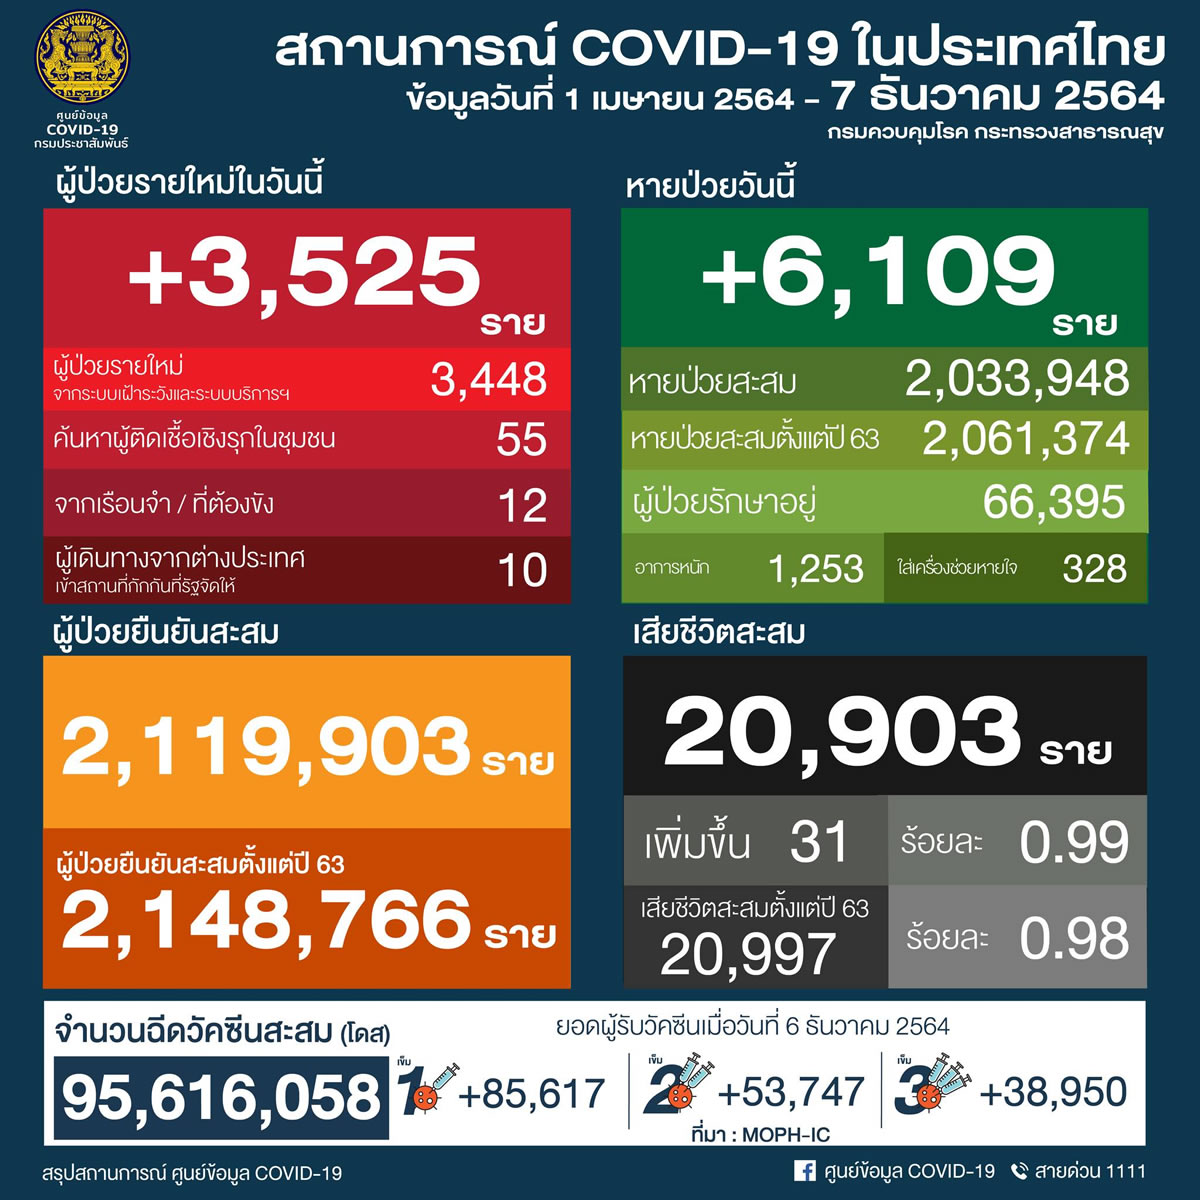 タイ 3,525人陽性 31人死亡／バンコク 810人陽性 1人死亡／チェンマイ 95人陽性［2021年12月7日発表］